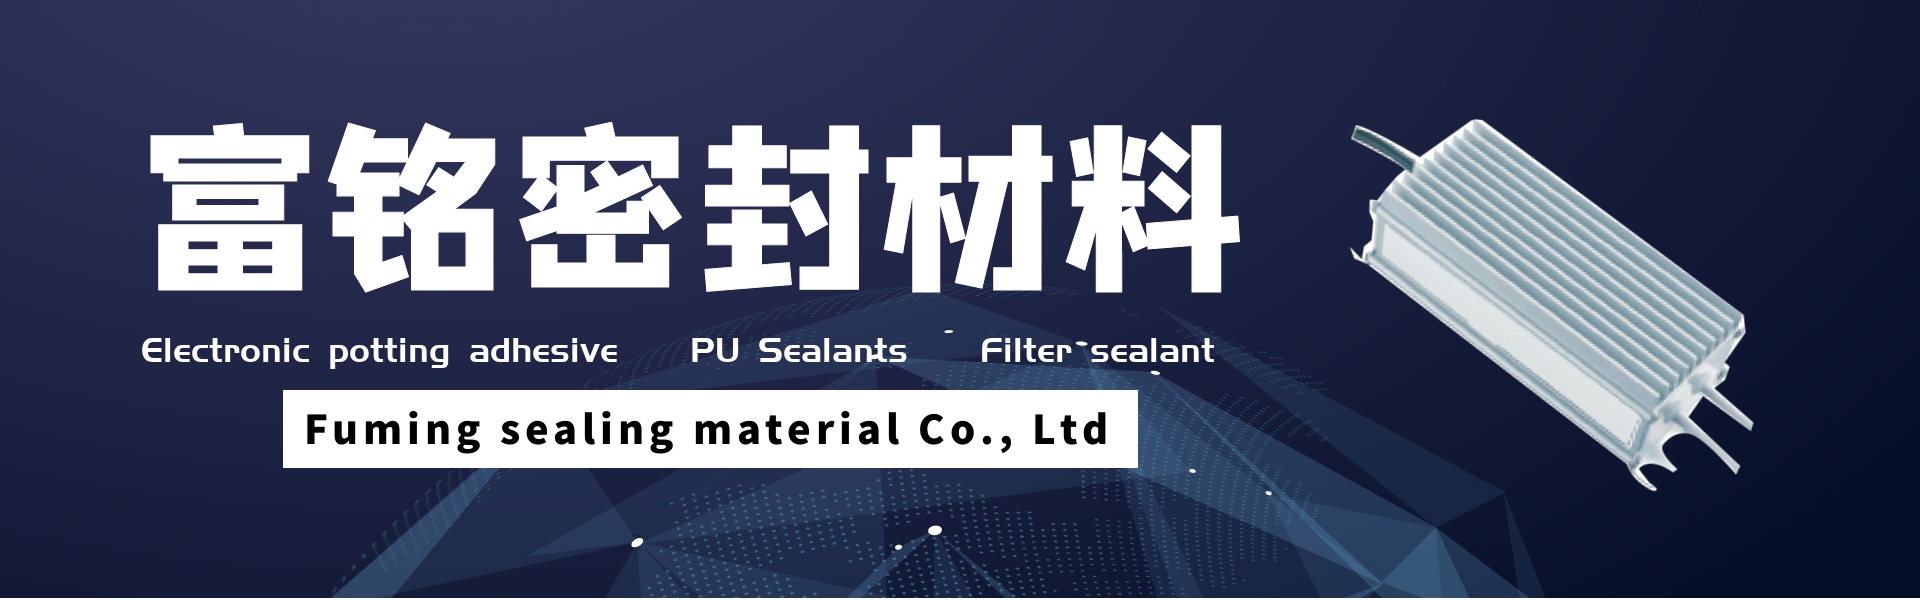 клей для электронной заливки, полиуретановые герметики, герметик для фильтров,Dongguan fuming sealing material Co., Ltd